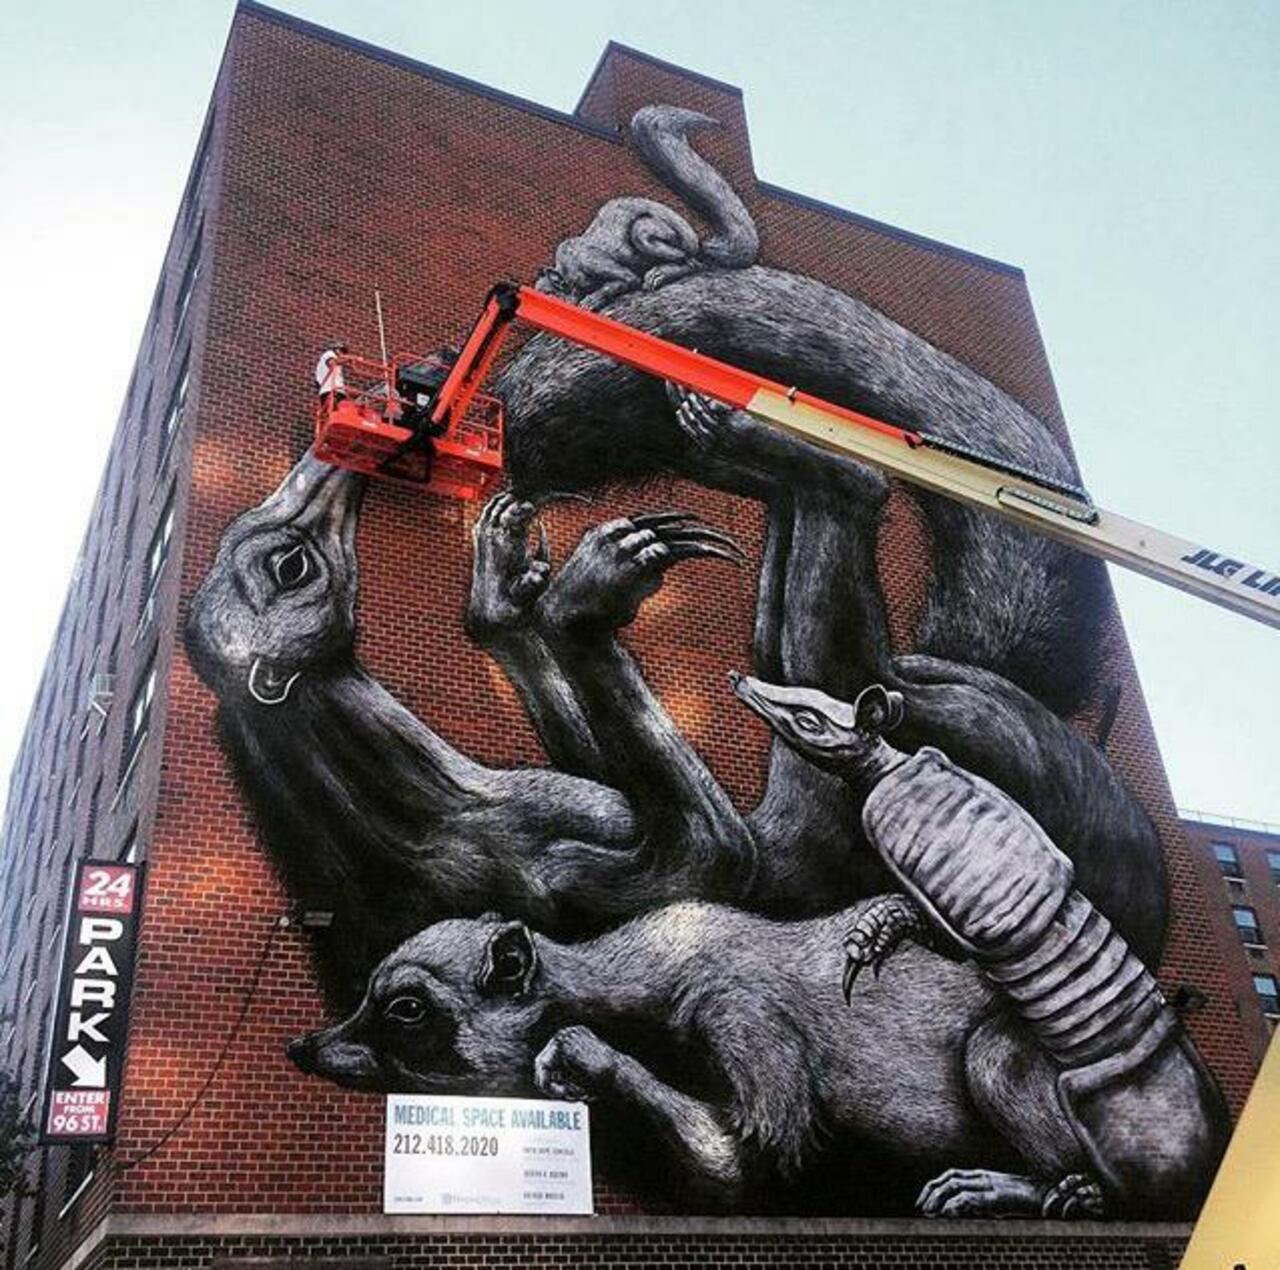 Street Art in progress by ROA in NYC

#art #graffiti #mural #streetart http://t.co/Dmyl5Oy5aj